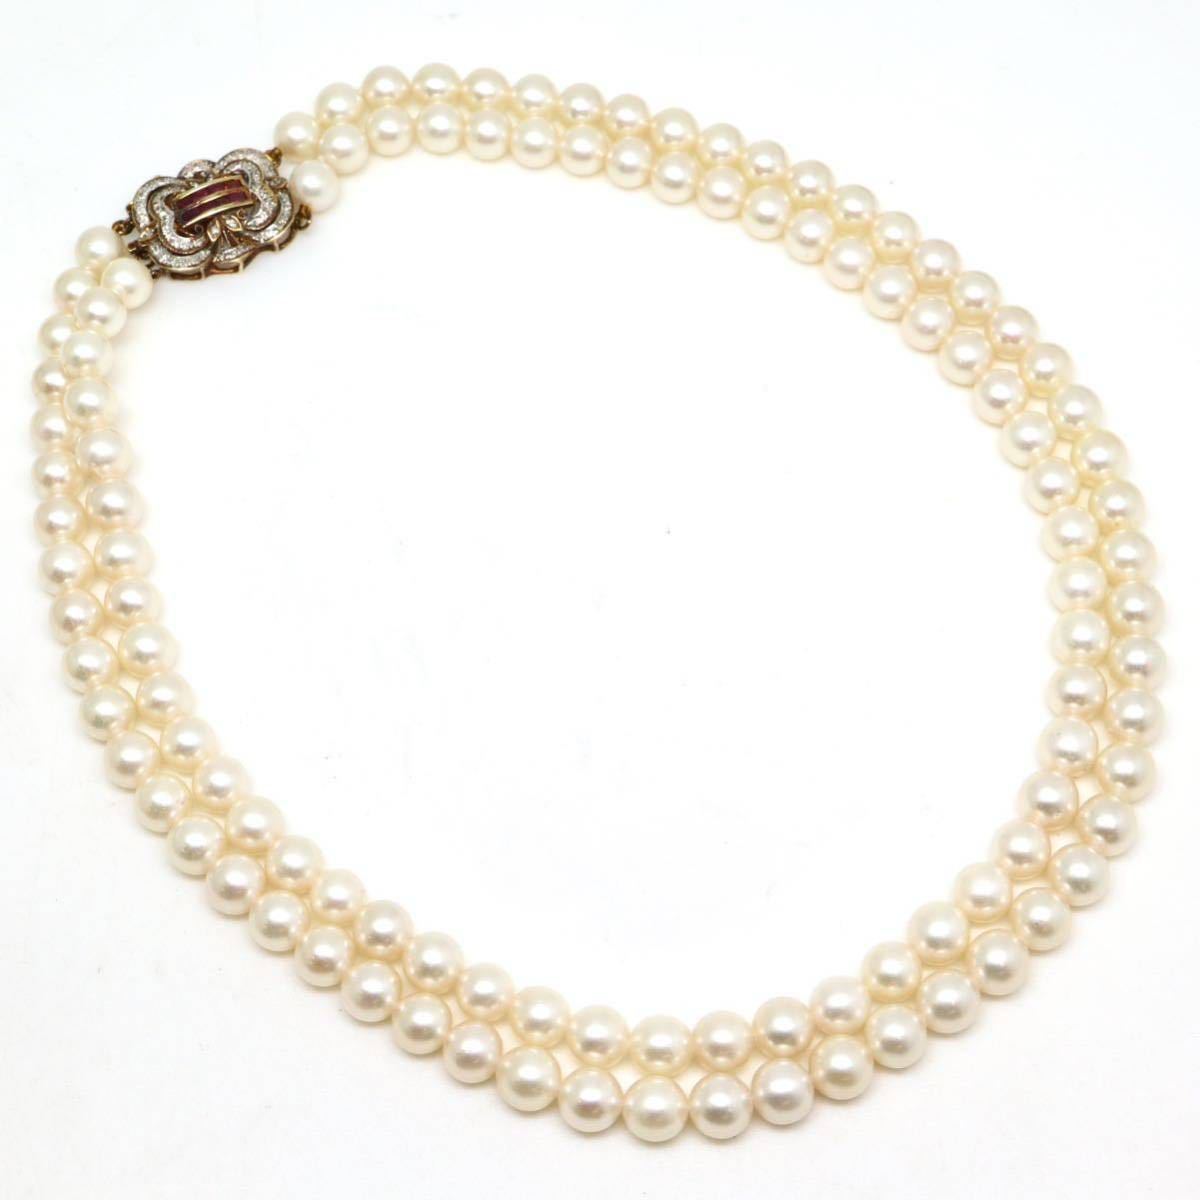 高品質!!天然ルビー&天然ダイヤモンド付き!!◆K14(585) アコヤ本真珠2連ネックレス◆N 38.7g 43.0cm 8.0mm珠 pearl necklace EB5/EG5の画像8